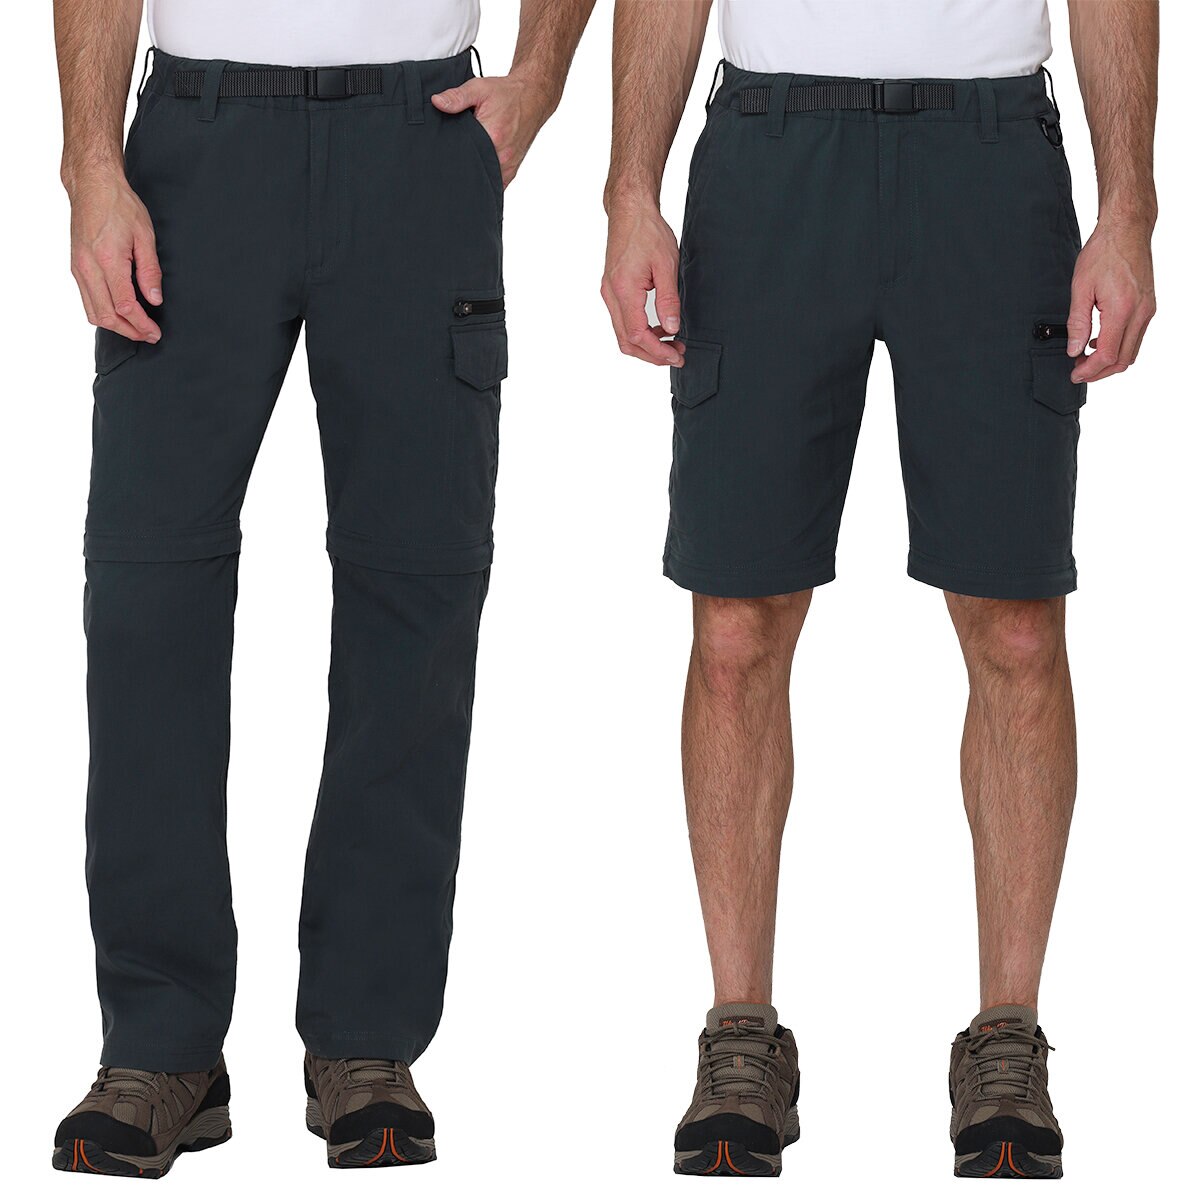 BC Clothing Pantalón Convertible a Short para Caballero Varias Tallas y Colores